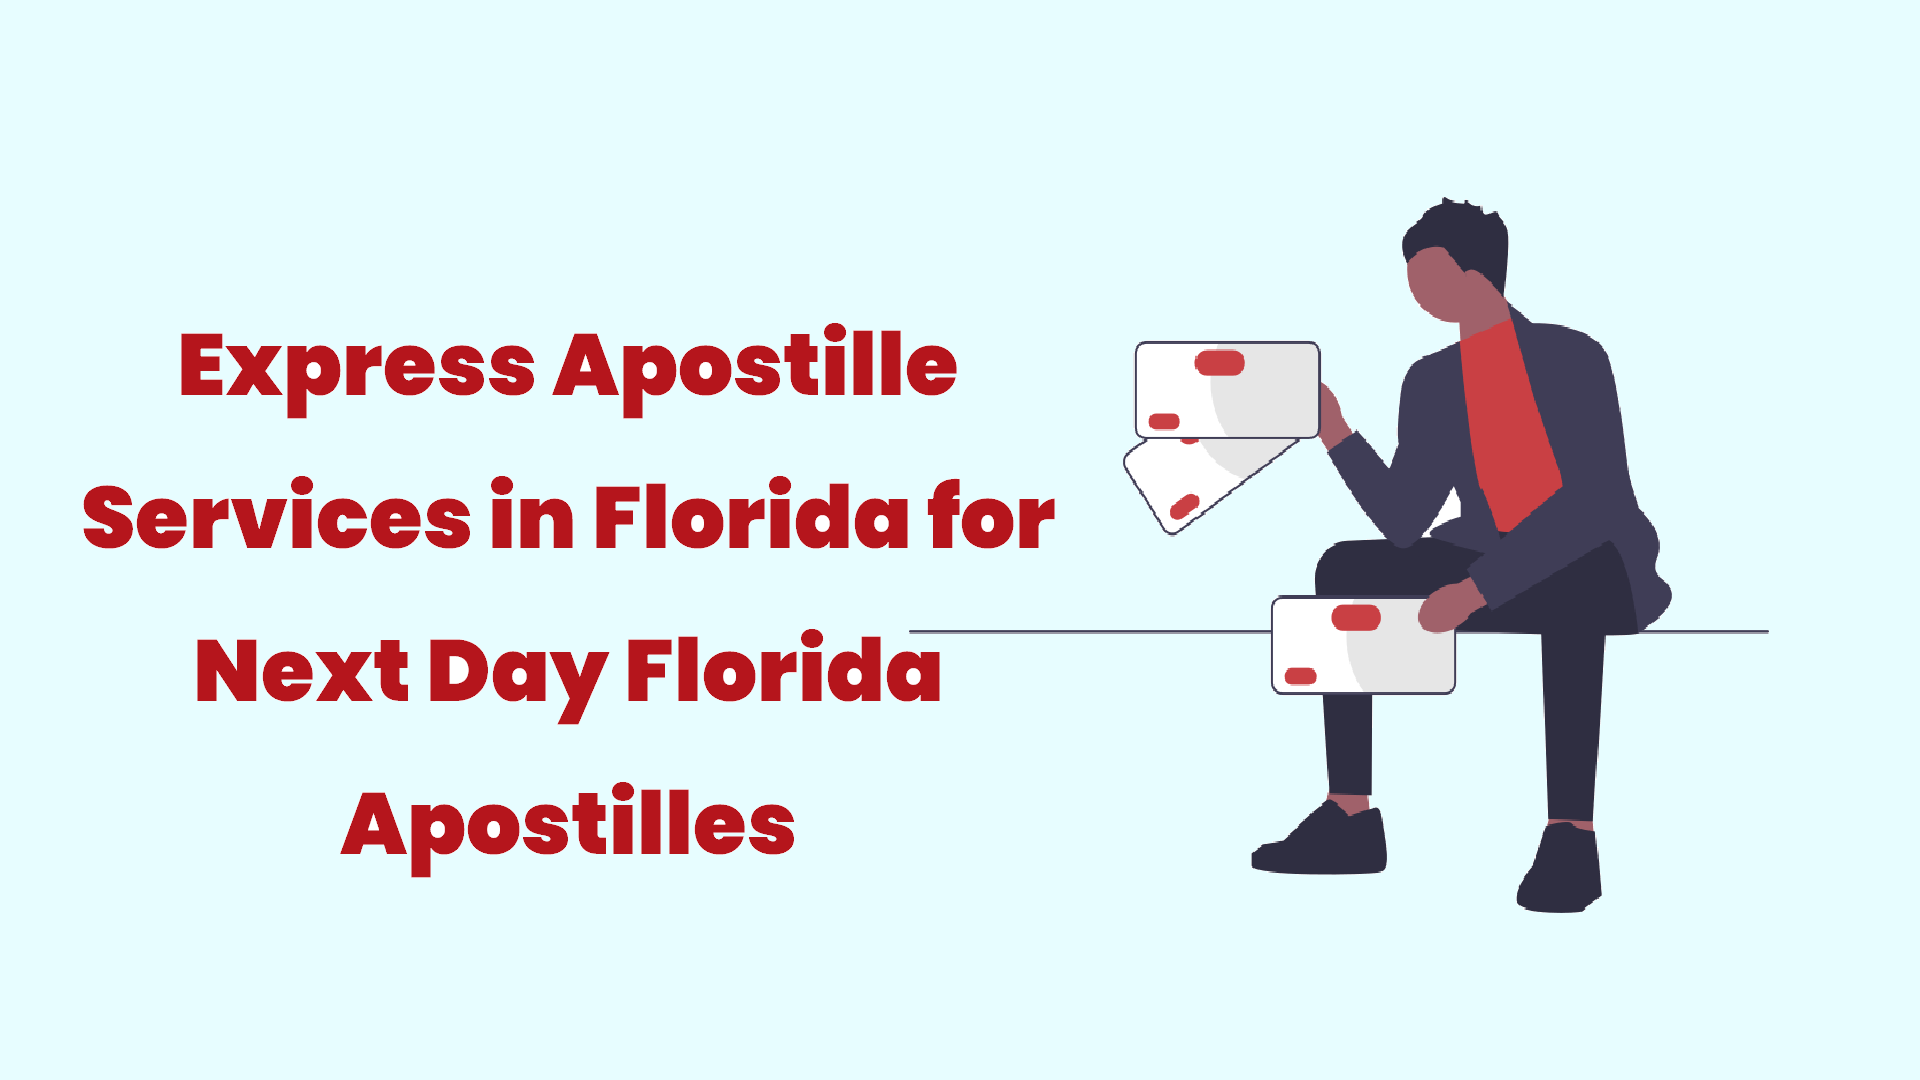 Express Apostille Services in Florida for Next Day Florida Apostilles